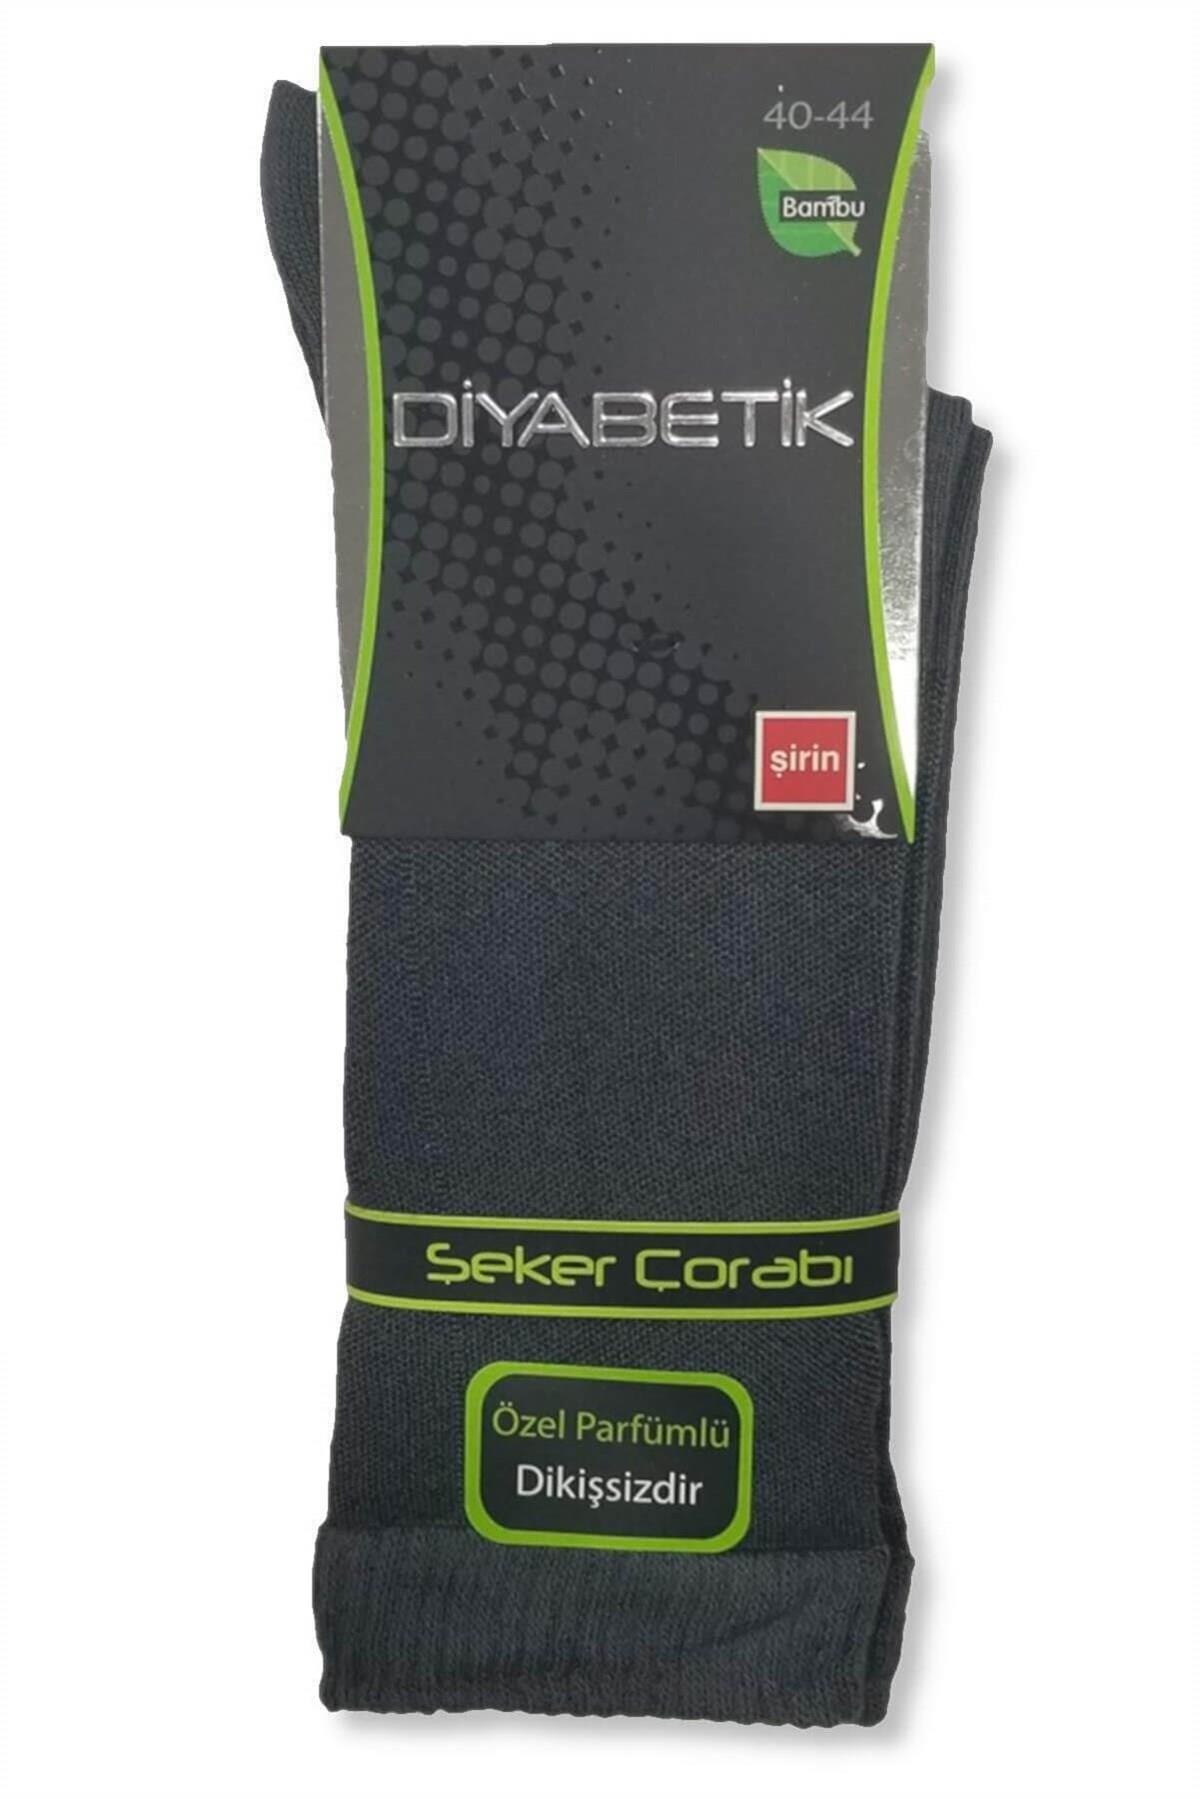 Şirin Lastiksiz Bambu Diyabetik Dikişsiz Erkek Şeker Çorap 6'lı Paket |  Çamaşırcımshop